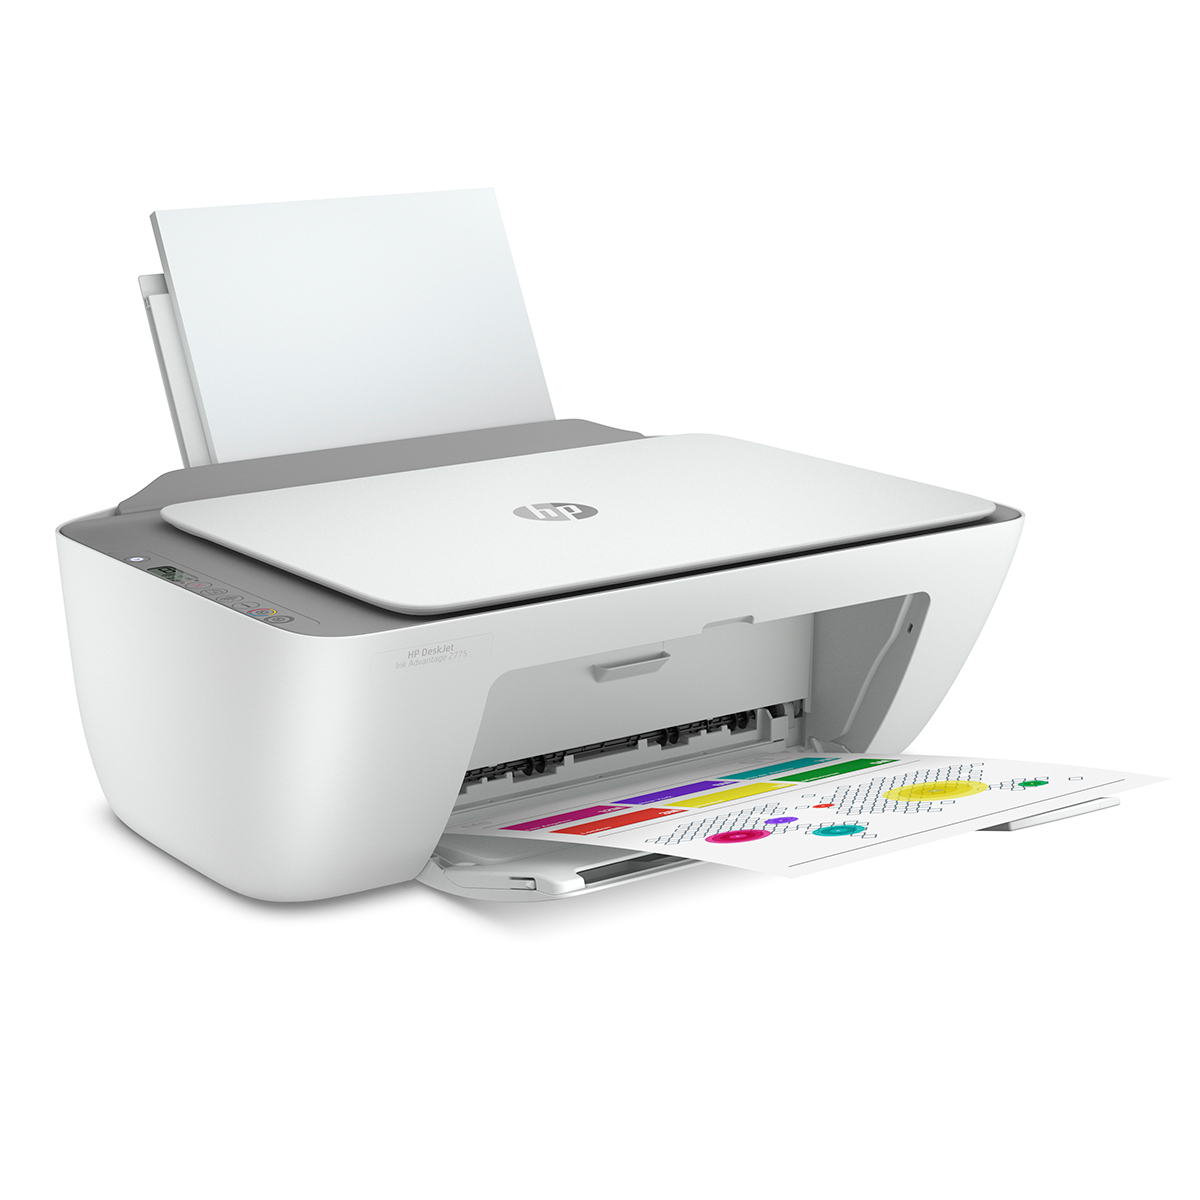  HP Impresora todo en uno Deskjet : Productos de Oficina